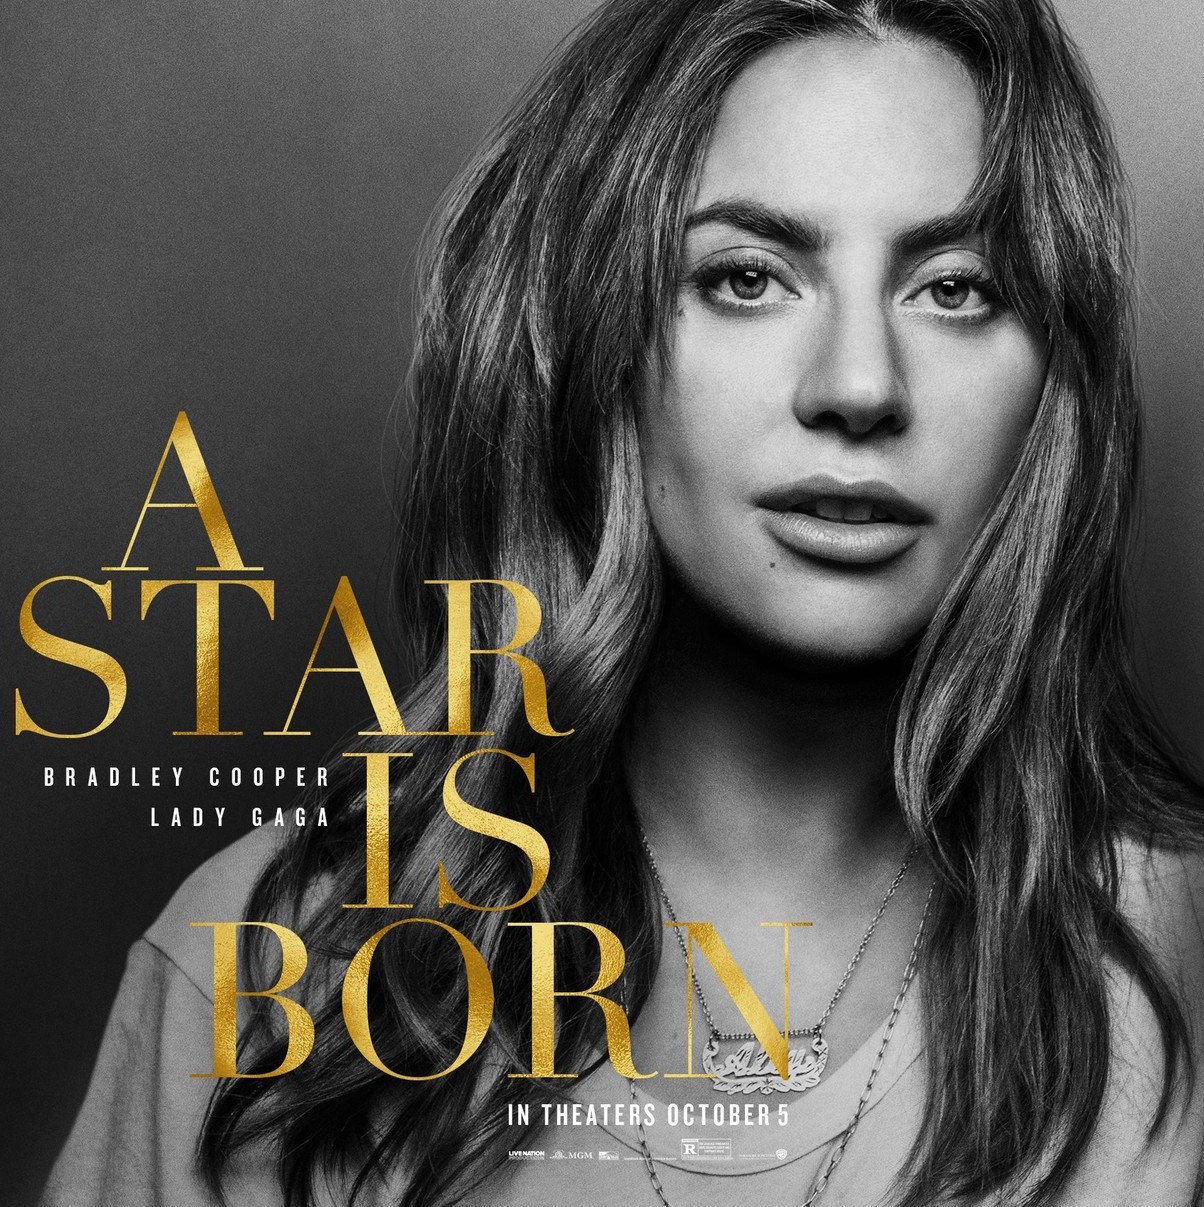 Леди Гага и Брэдли Купер поют в трейлере фильма «Звезда родилась»-320x180